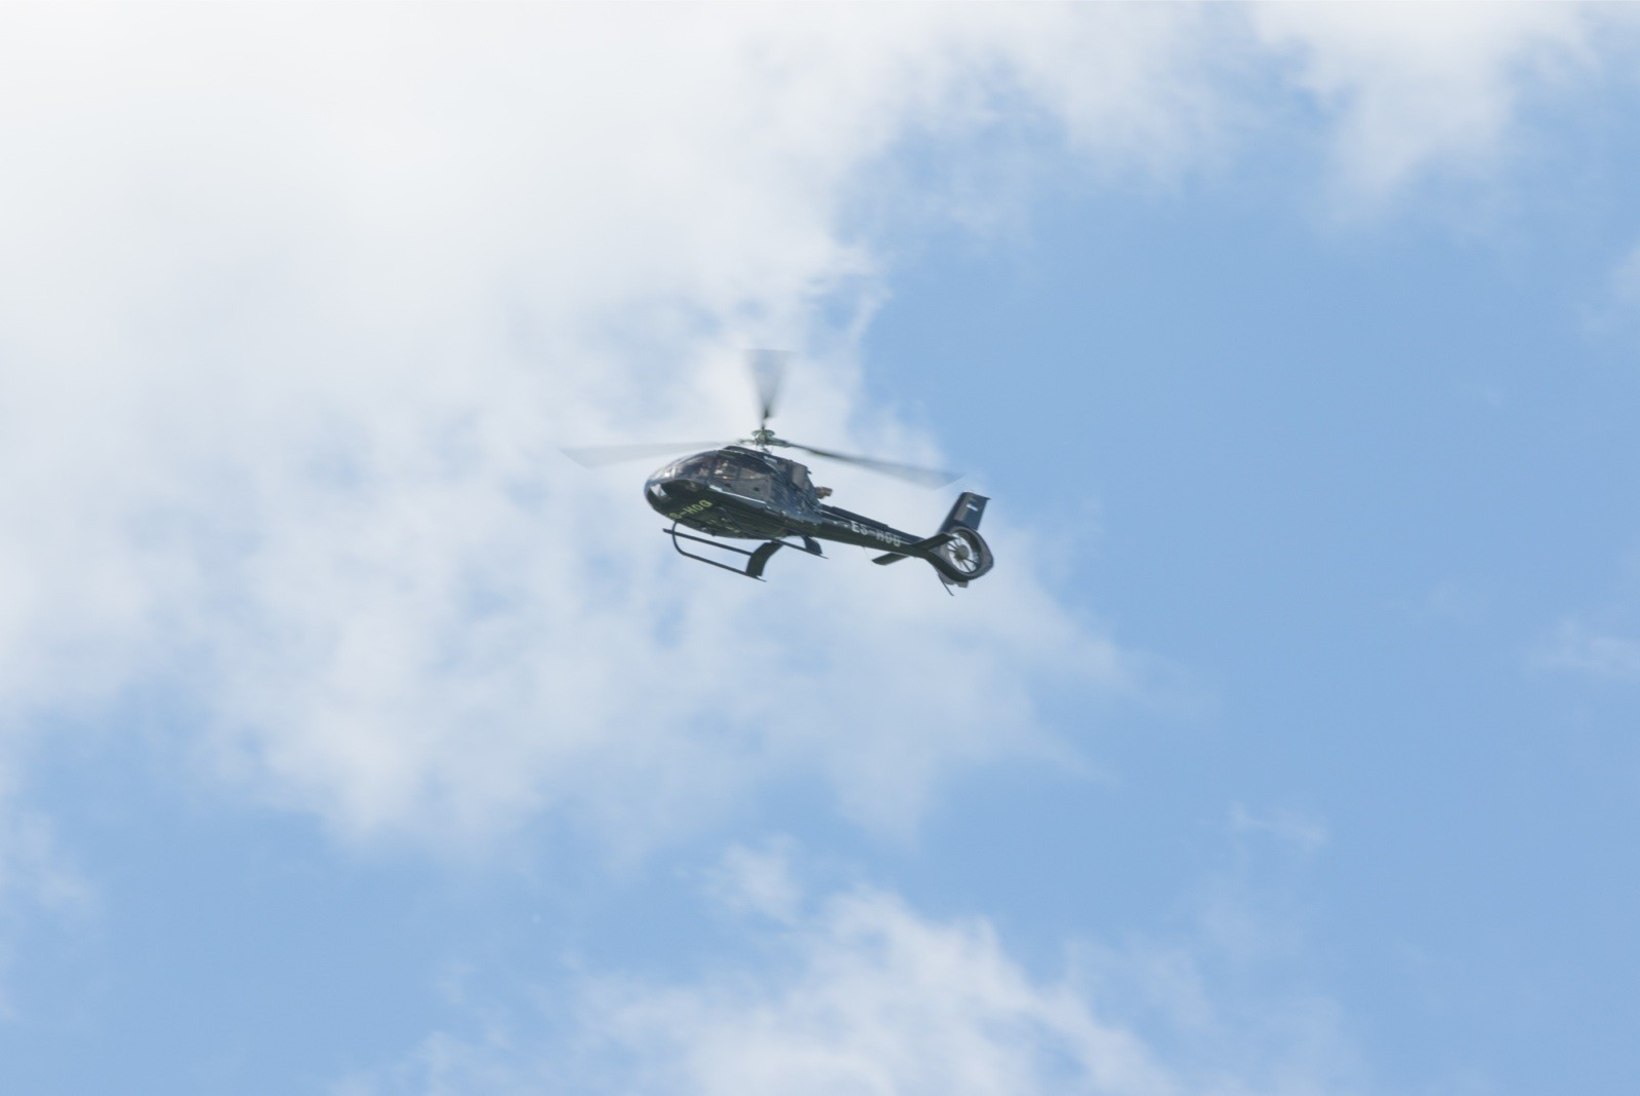 FOTOD | Oleg Grossi helikopteriga lennanud inimesed rikkusid 2 + 2 reeglit